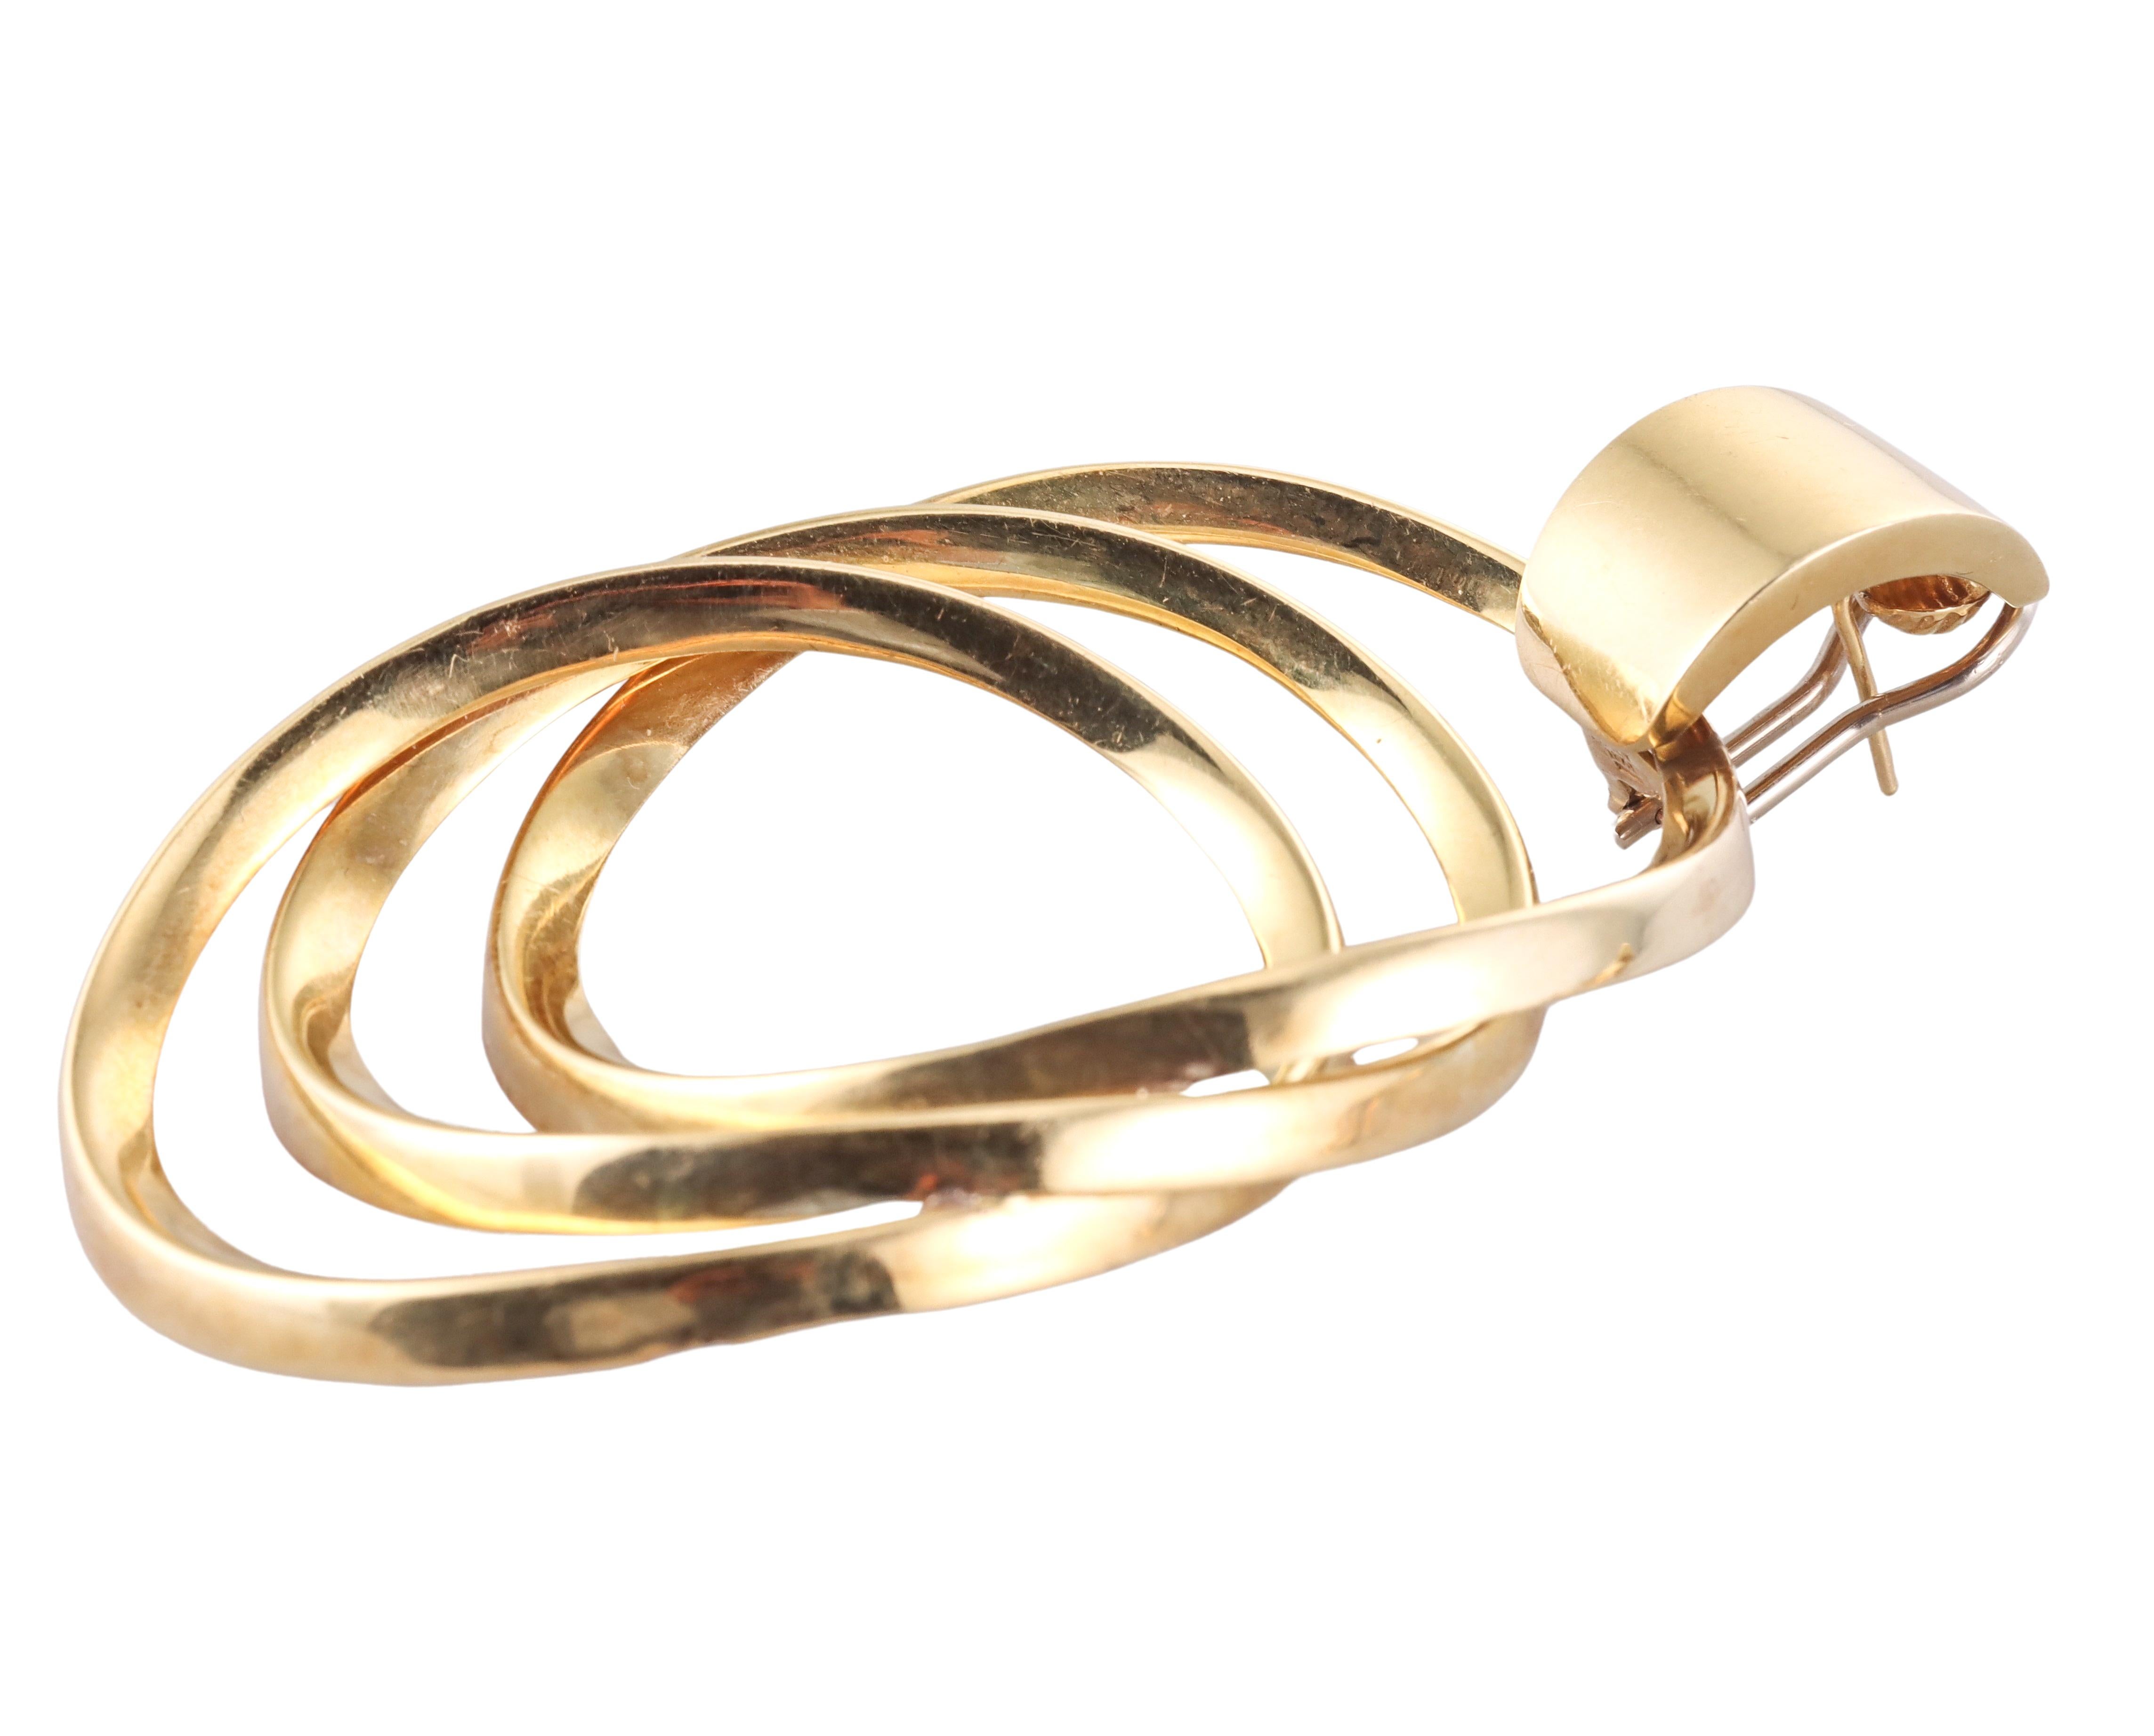 Skurrile Ohrringe aus 18-karätigem Gold aus Italien, circa 1980, mit drei ineinandergreifenden Kreisen.  Die Ohrringe messen 3,25